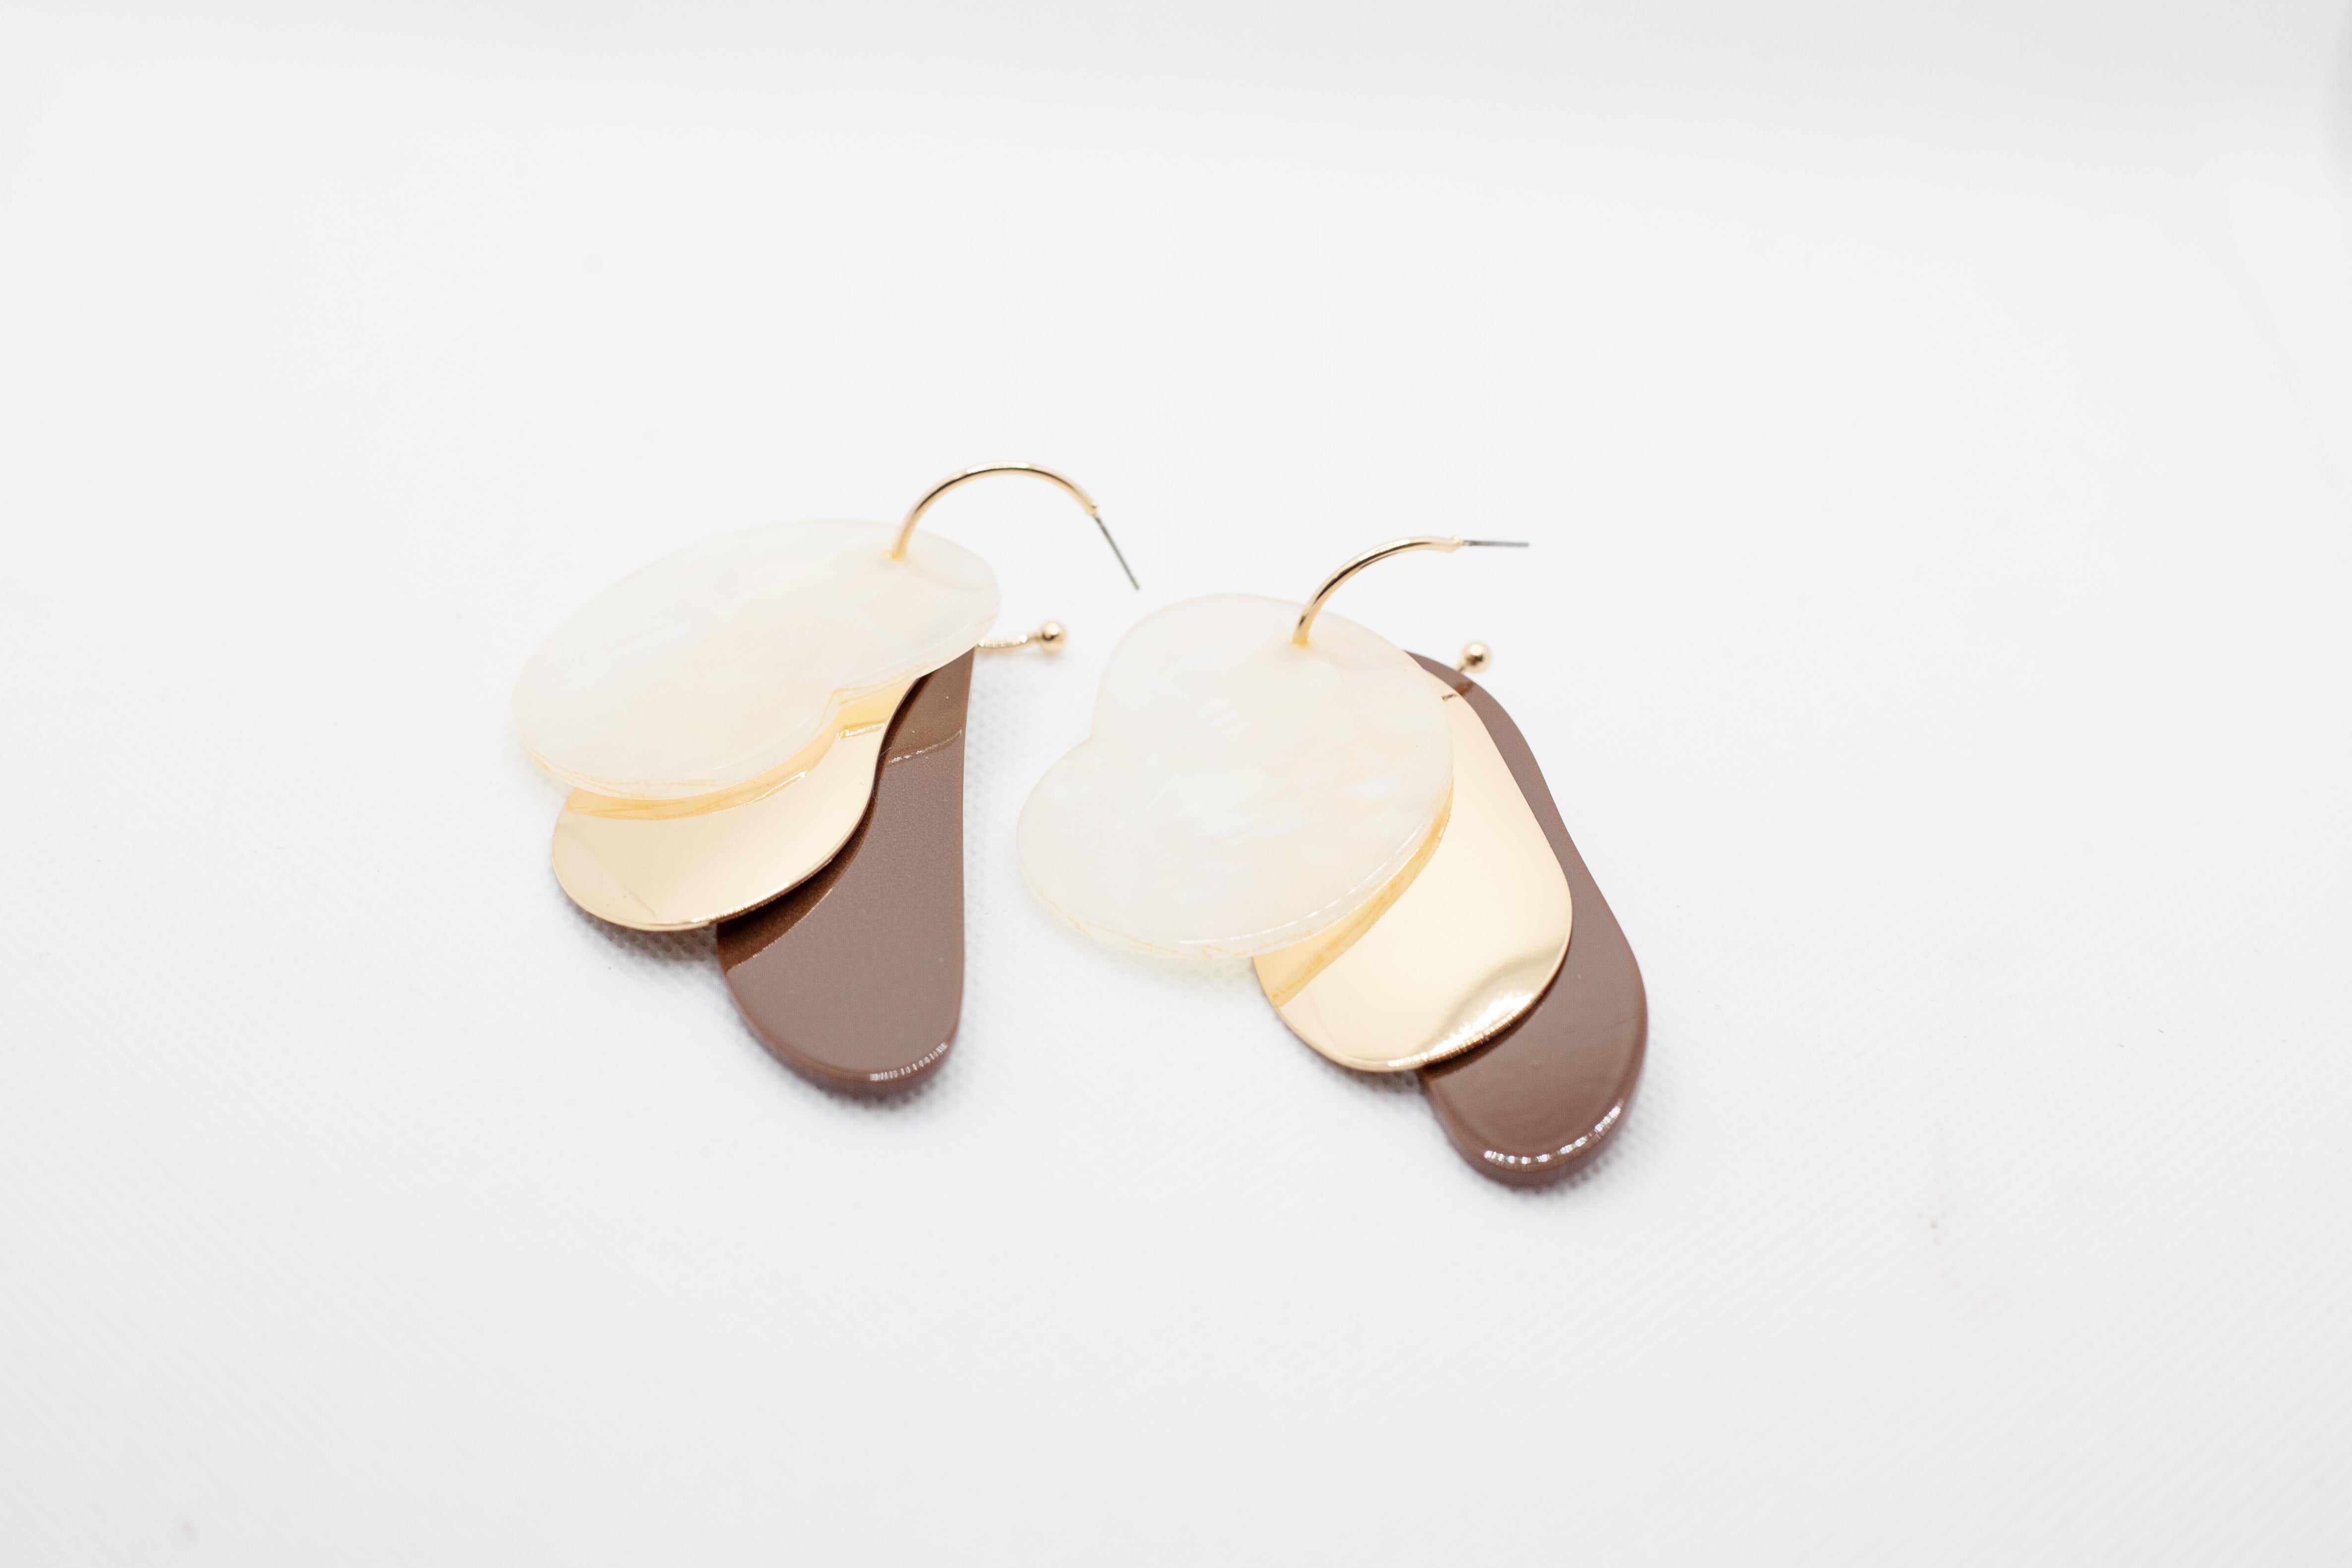 Acrylic drop earrings